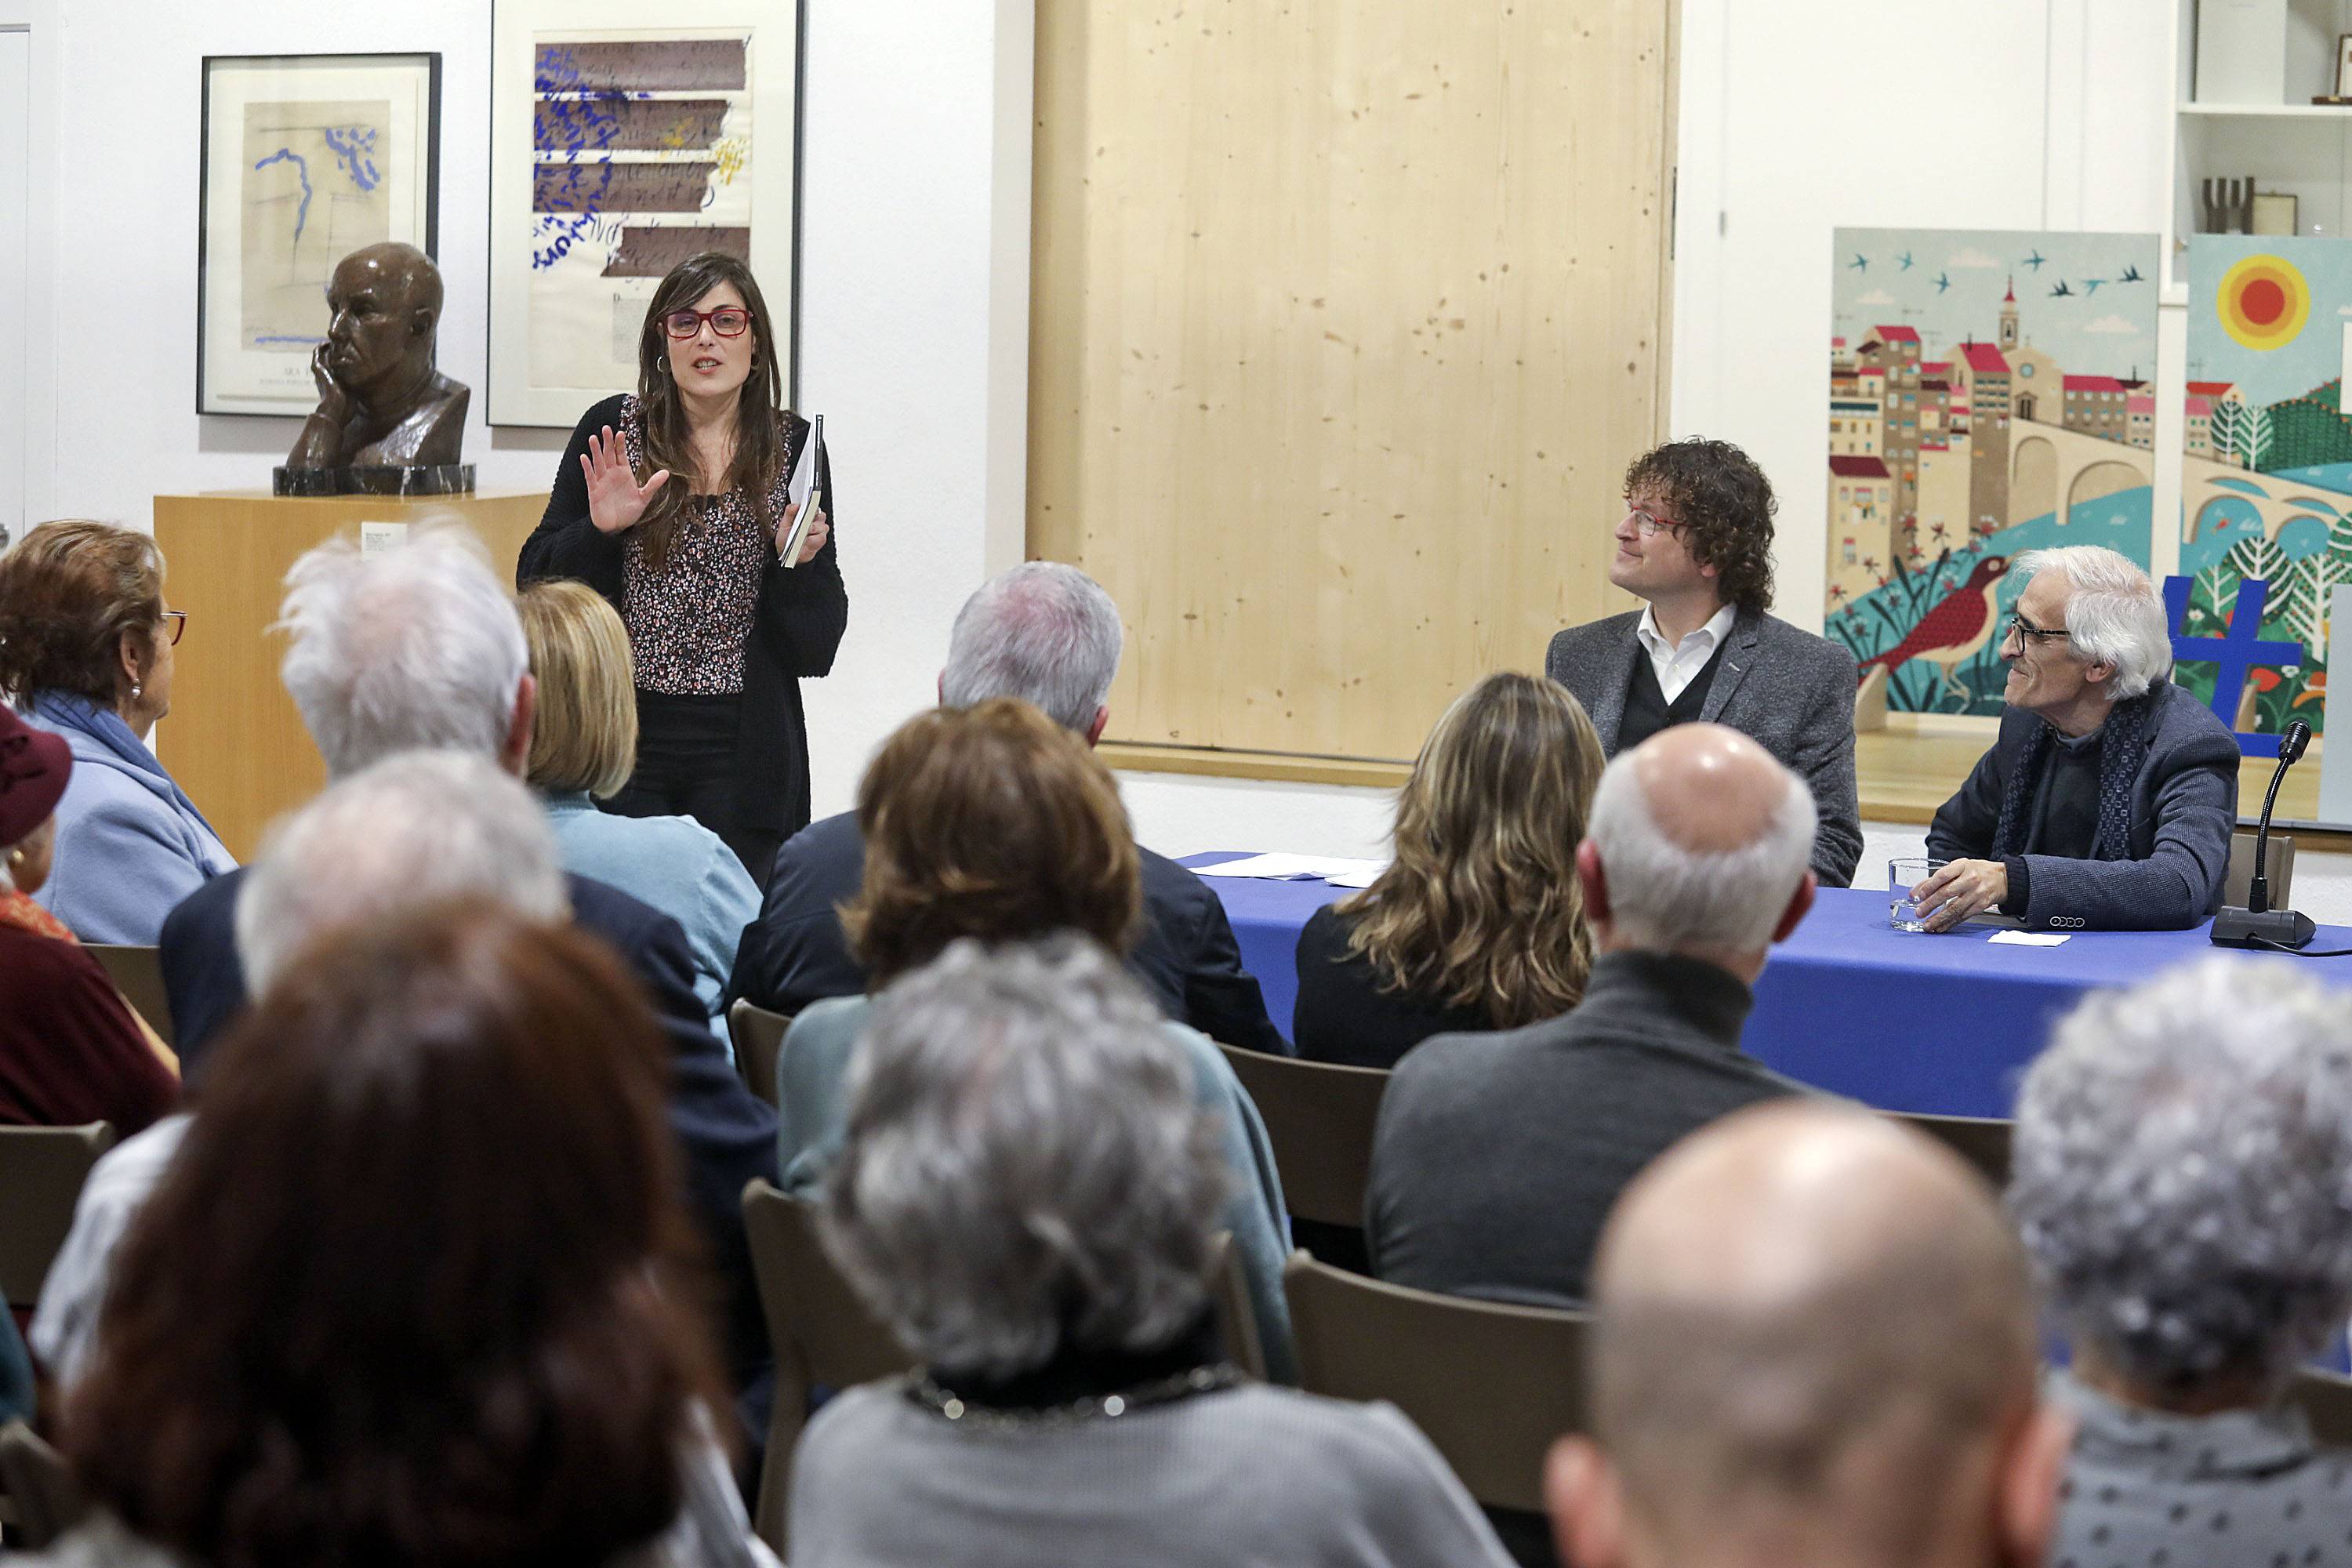 L’autor a la taula amb Lluís Solà i Montse Caralt, directora de la Fundació Miquel Martí i Pol, presentant l’acte.